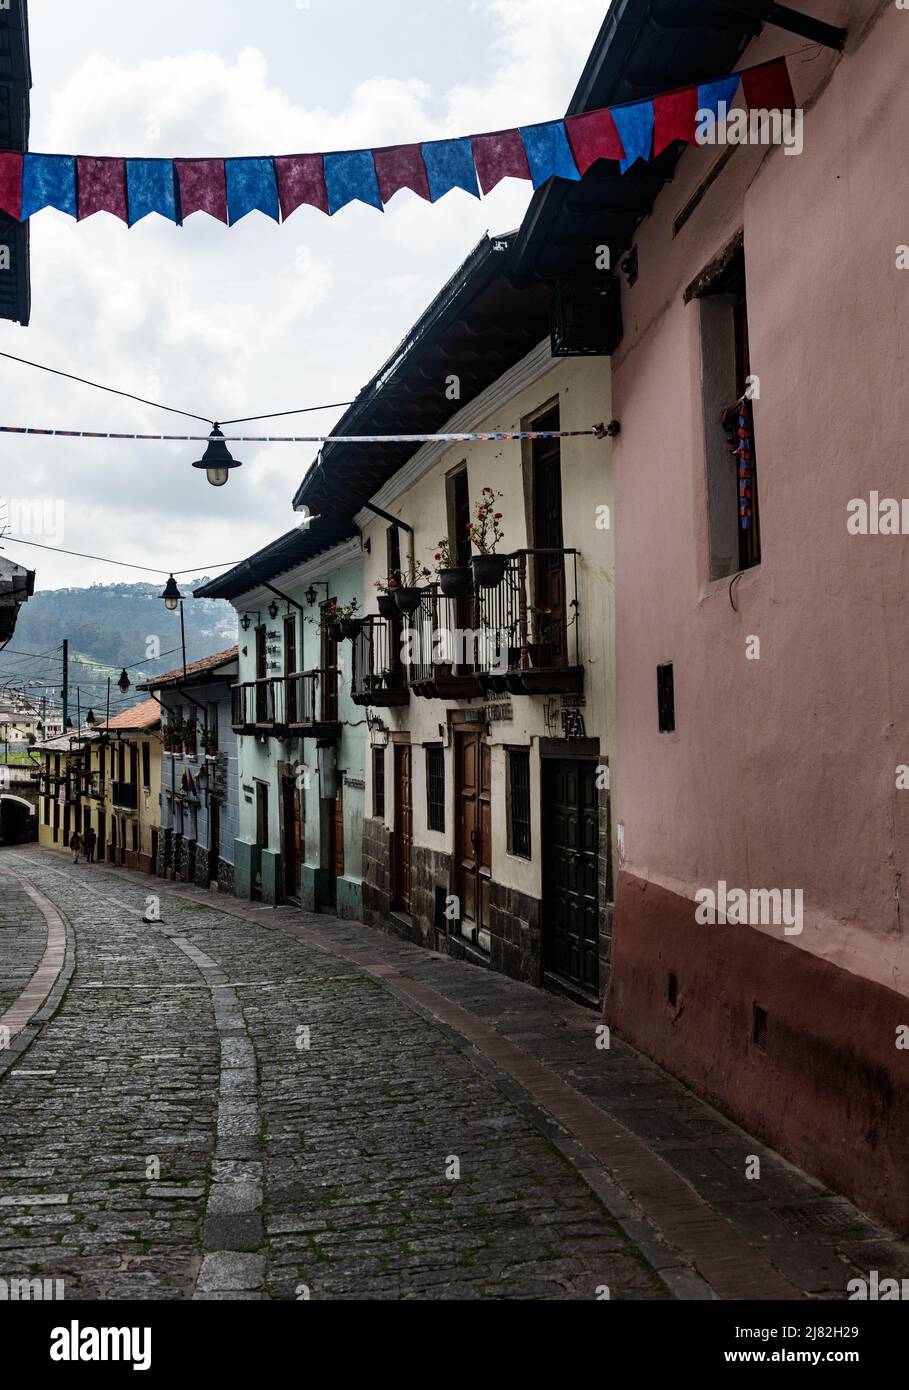 Historic Calle la Ronda street scene, Quito, Ecuador, South America Stock Photo